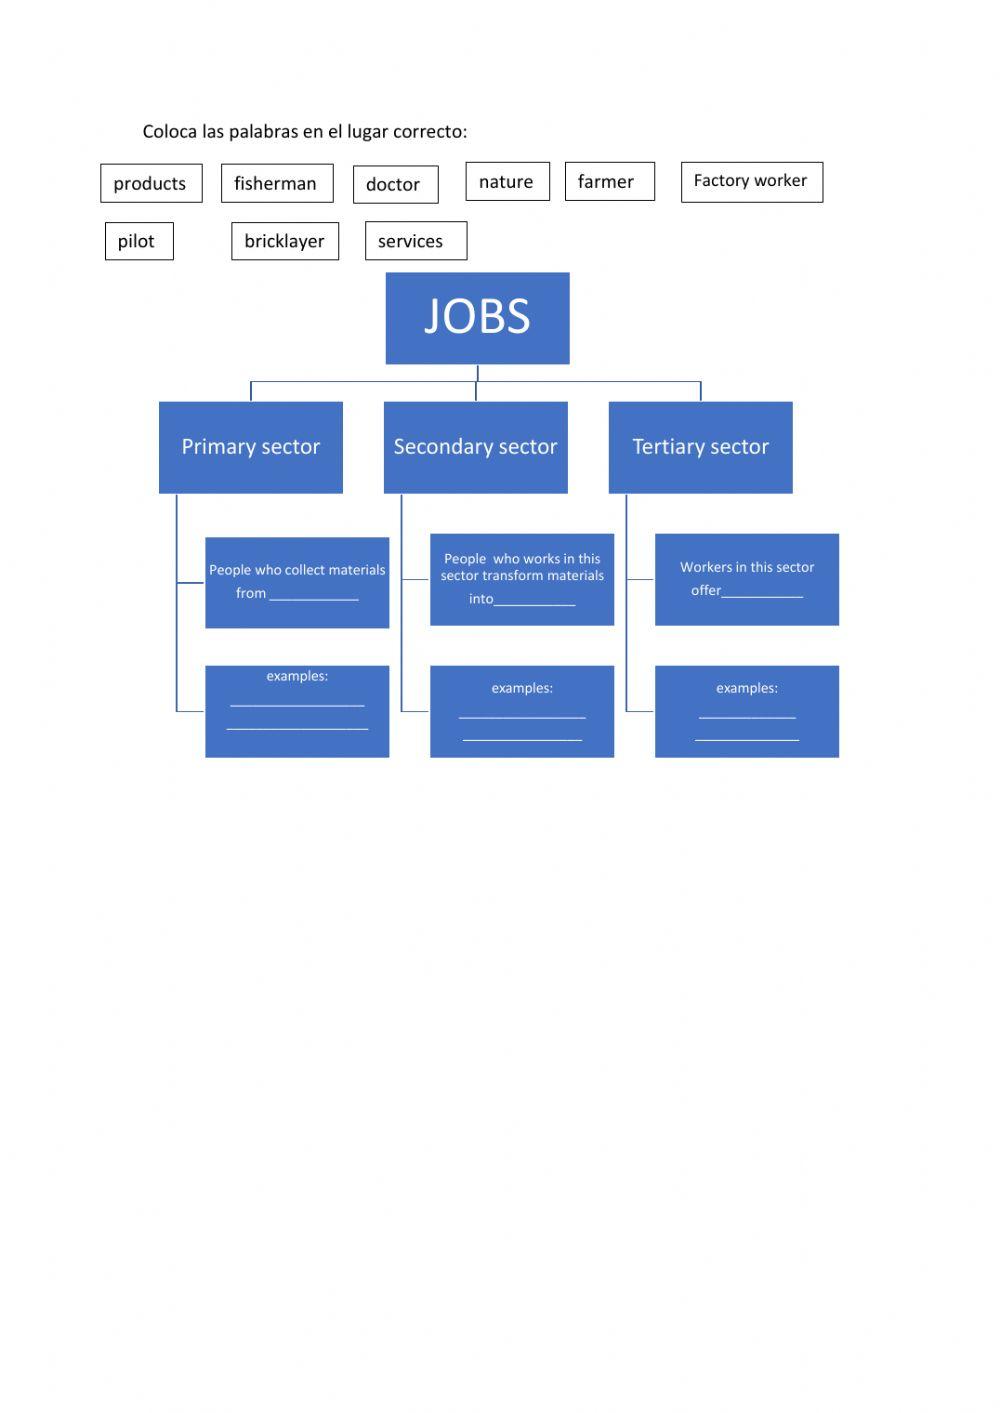 Jobs and sectors